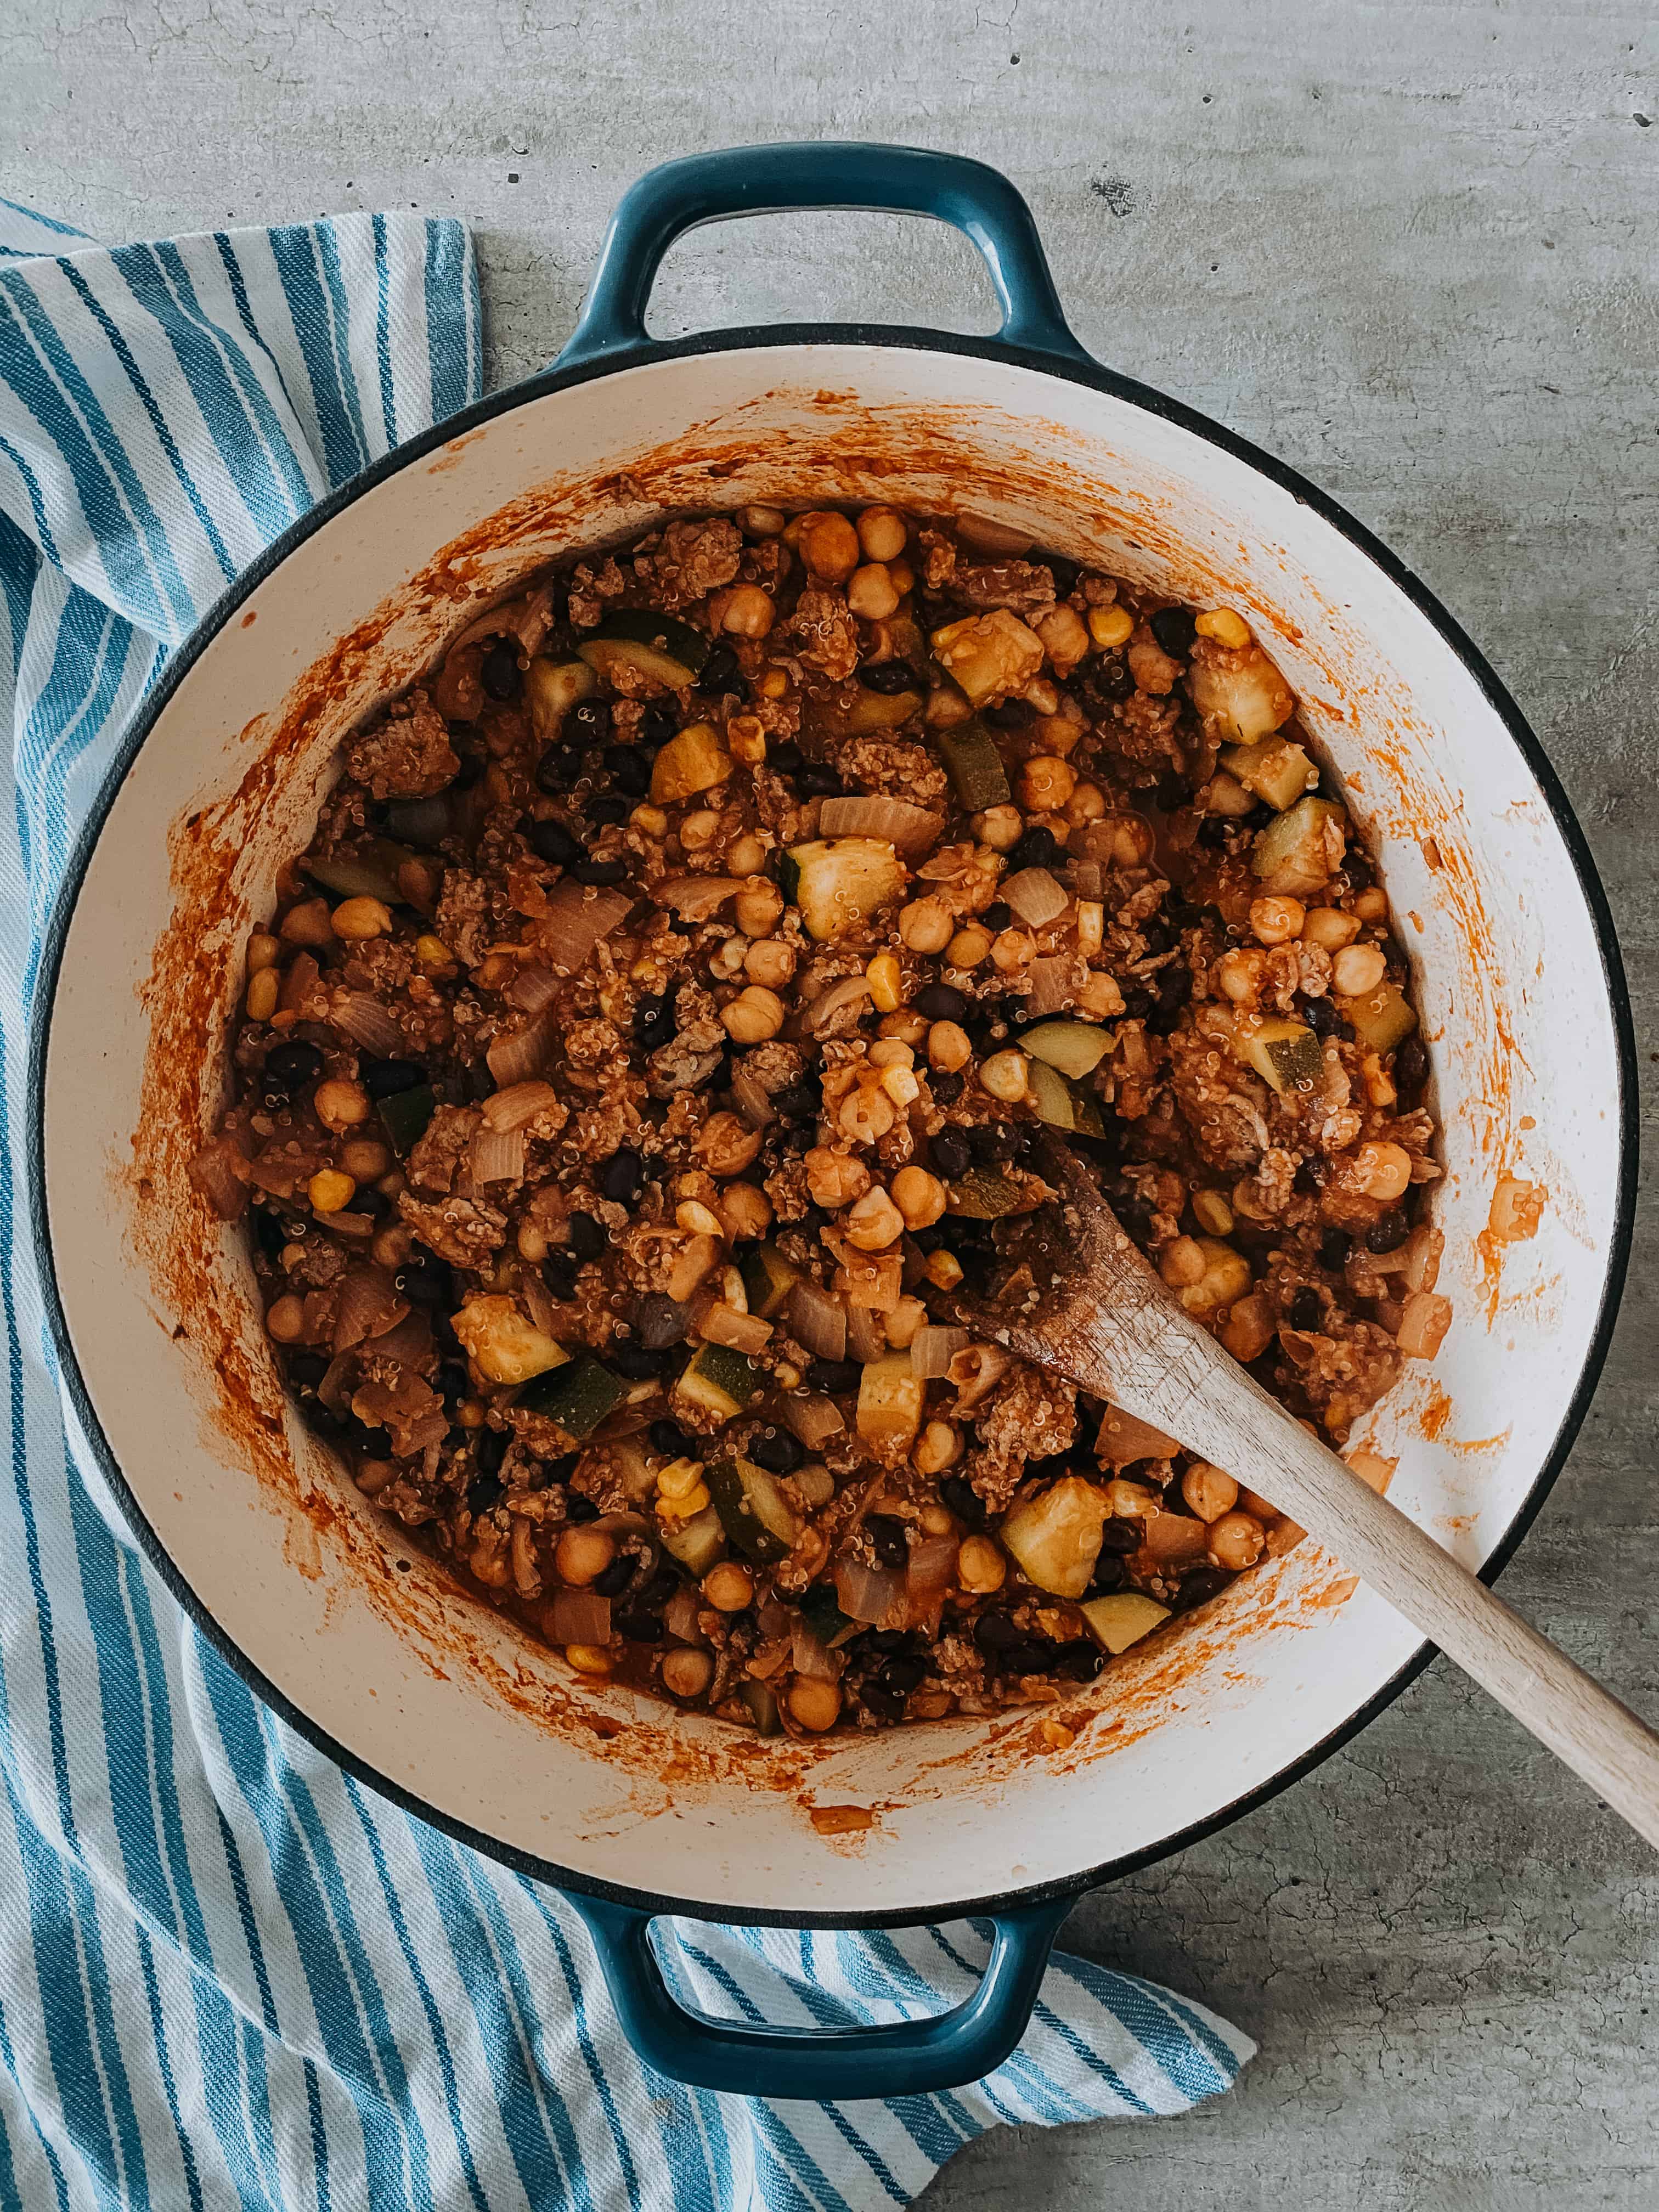 Turkey quinoa chili recipe